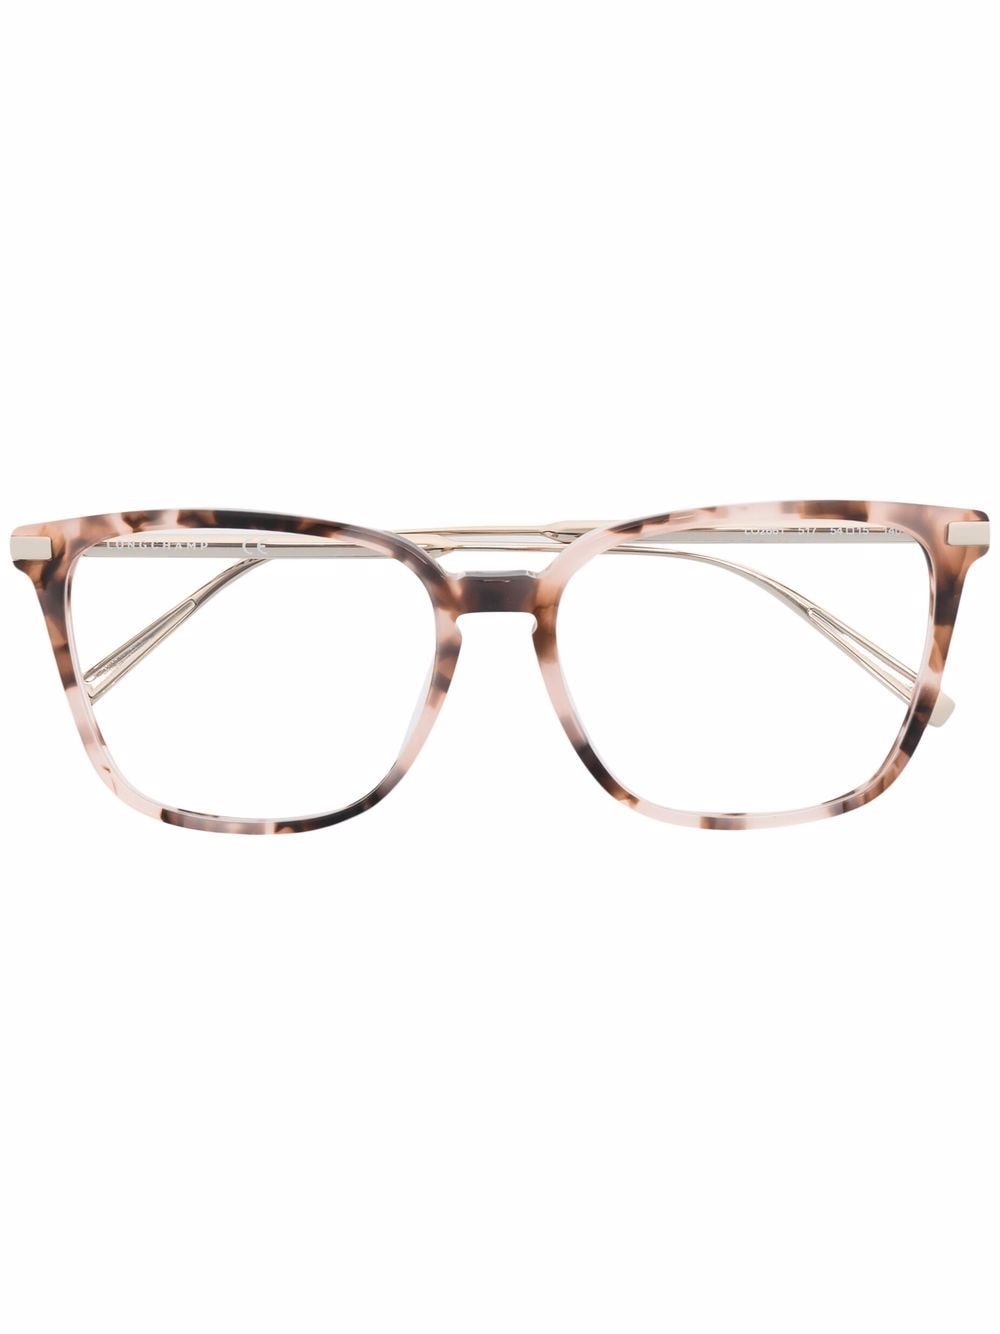 фото Longchamp очки в квадратной оправе черепаховой расцветки